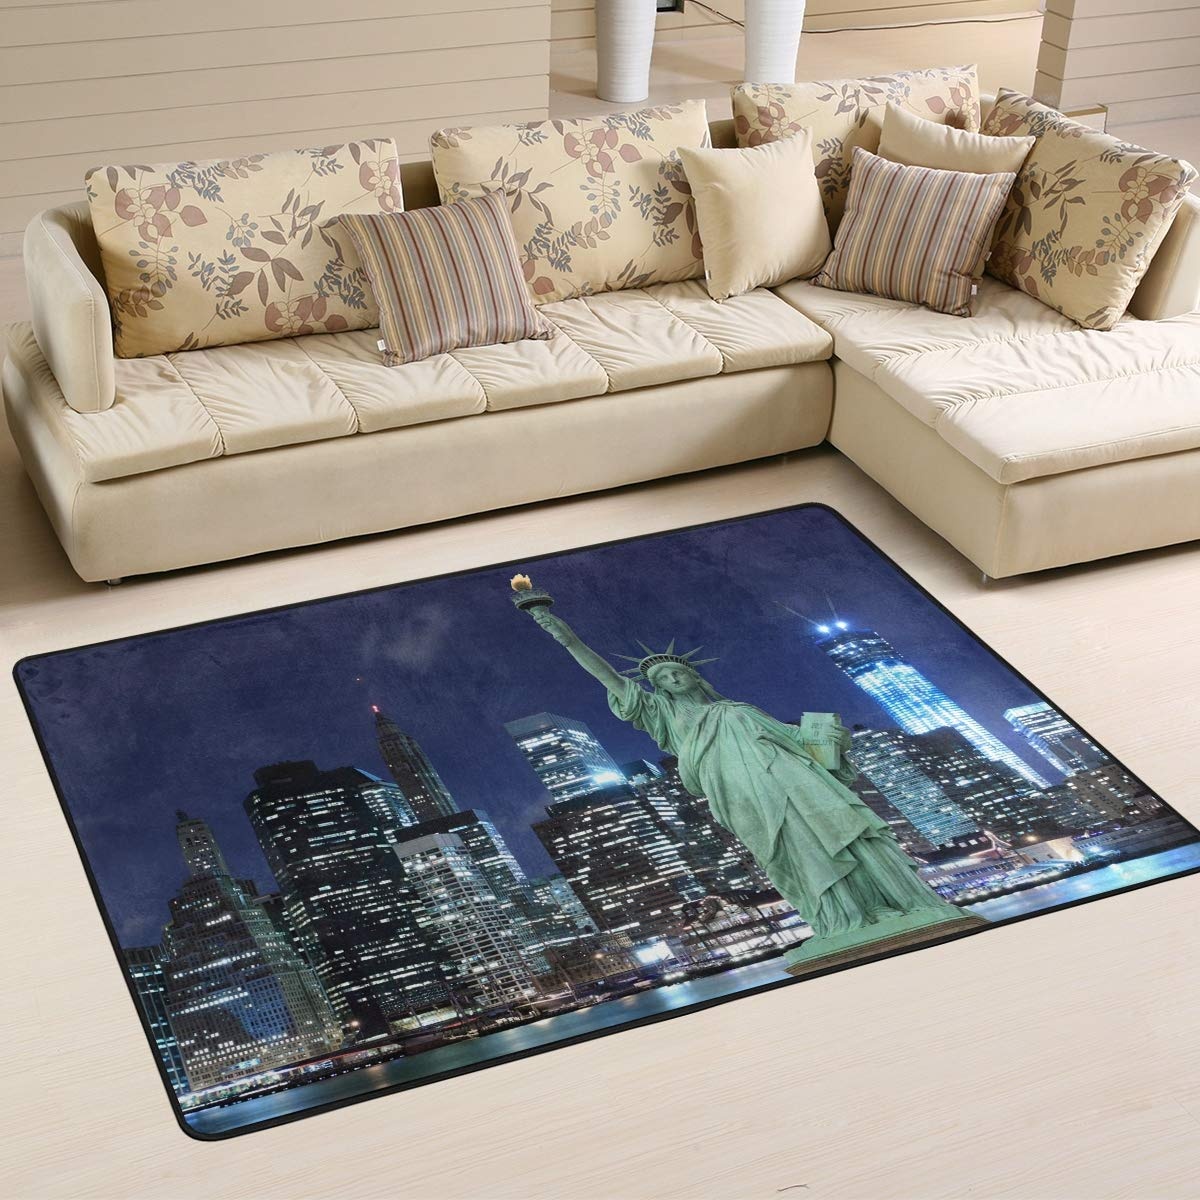 Mnsruu New York Manhattan Skyline Statue of Liberty Area Teppich Teppich Teppich für Wohnzimmer Schlafzimmer, Textil, multi, 91cm x 61cm(3 x 2 feet)